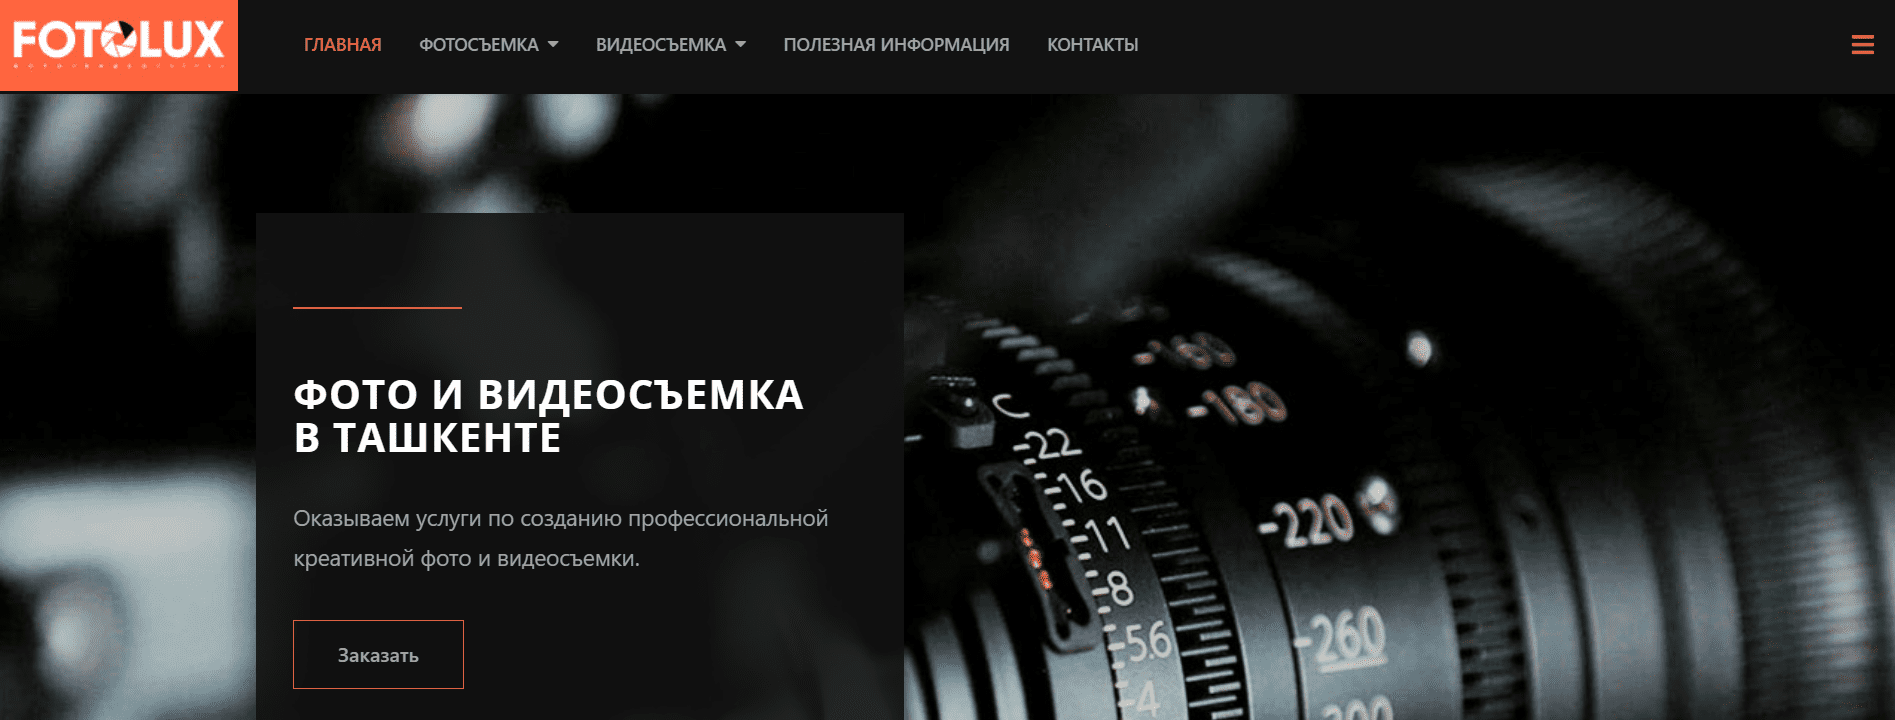 Фотолюкс.уз (fotolux.uz) - официальный сайт